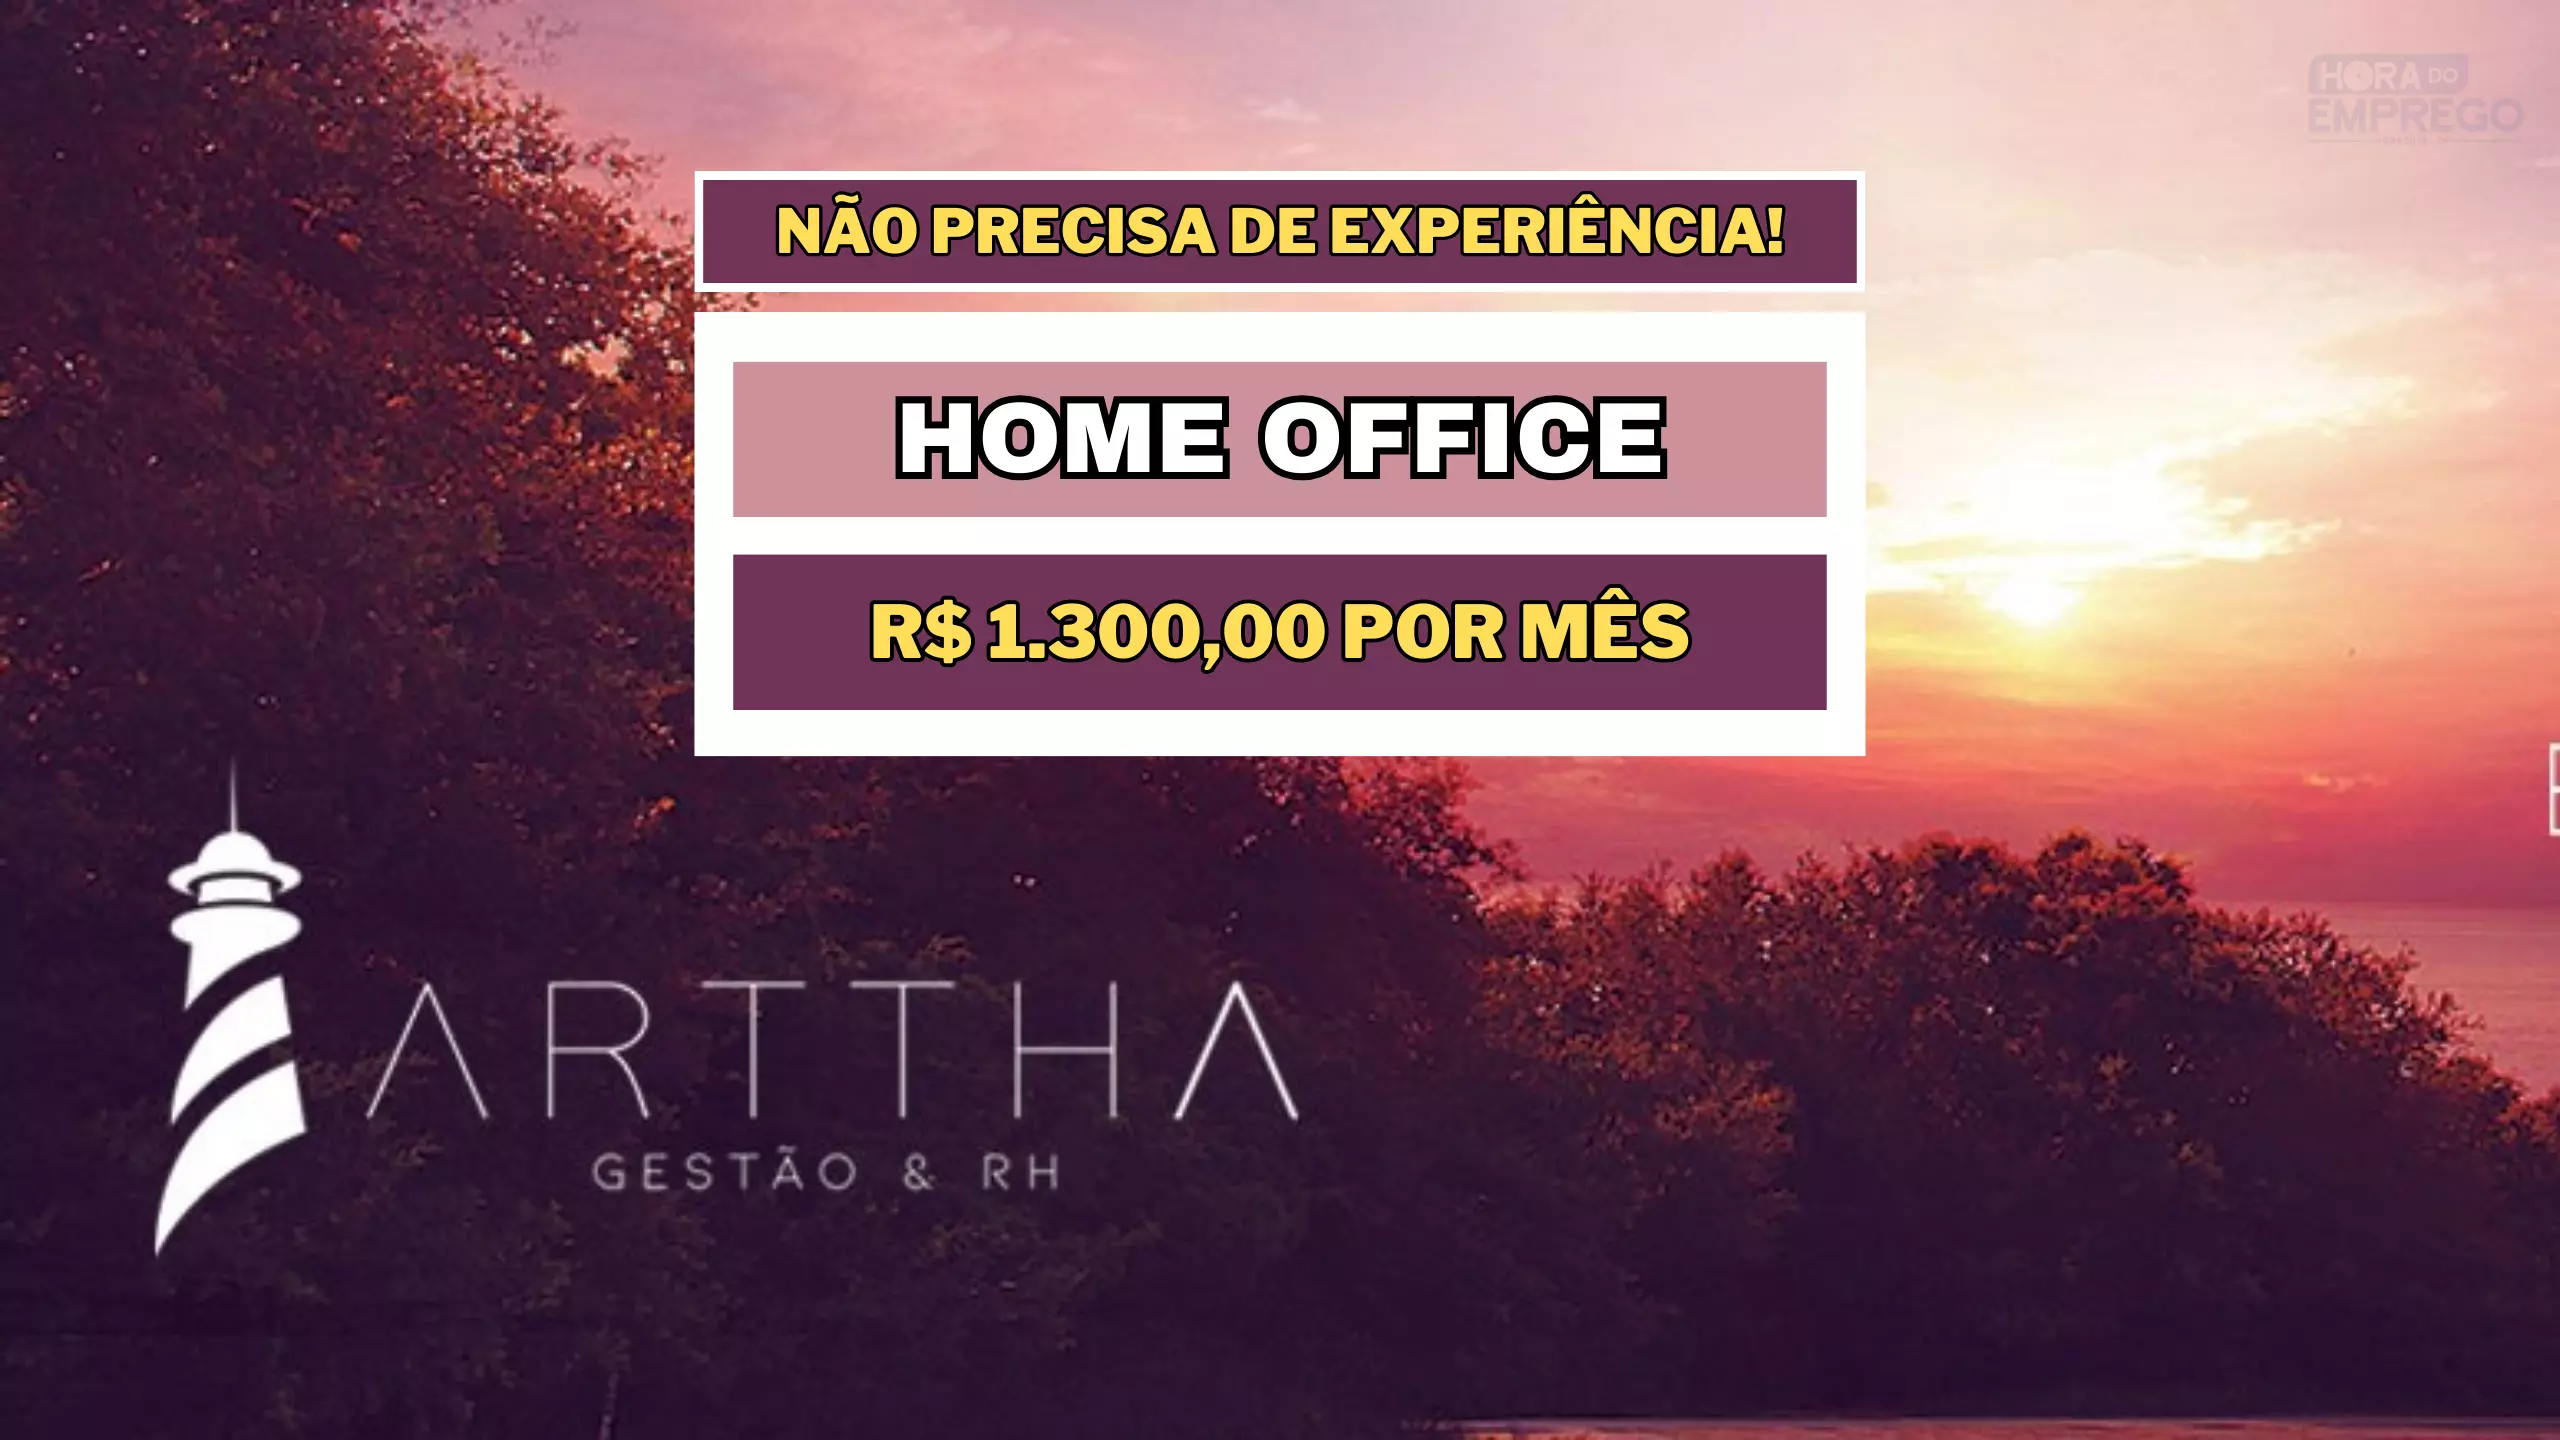 ARTTHA Abre vaga HOME OFFICE para trabalhar de casa com salário de R$ 1.300,00 como Assistente de Atendimento